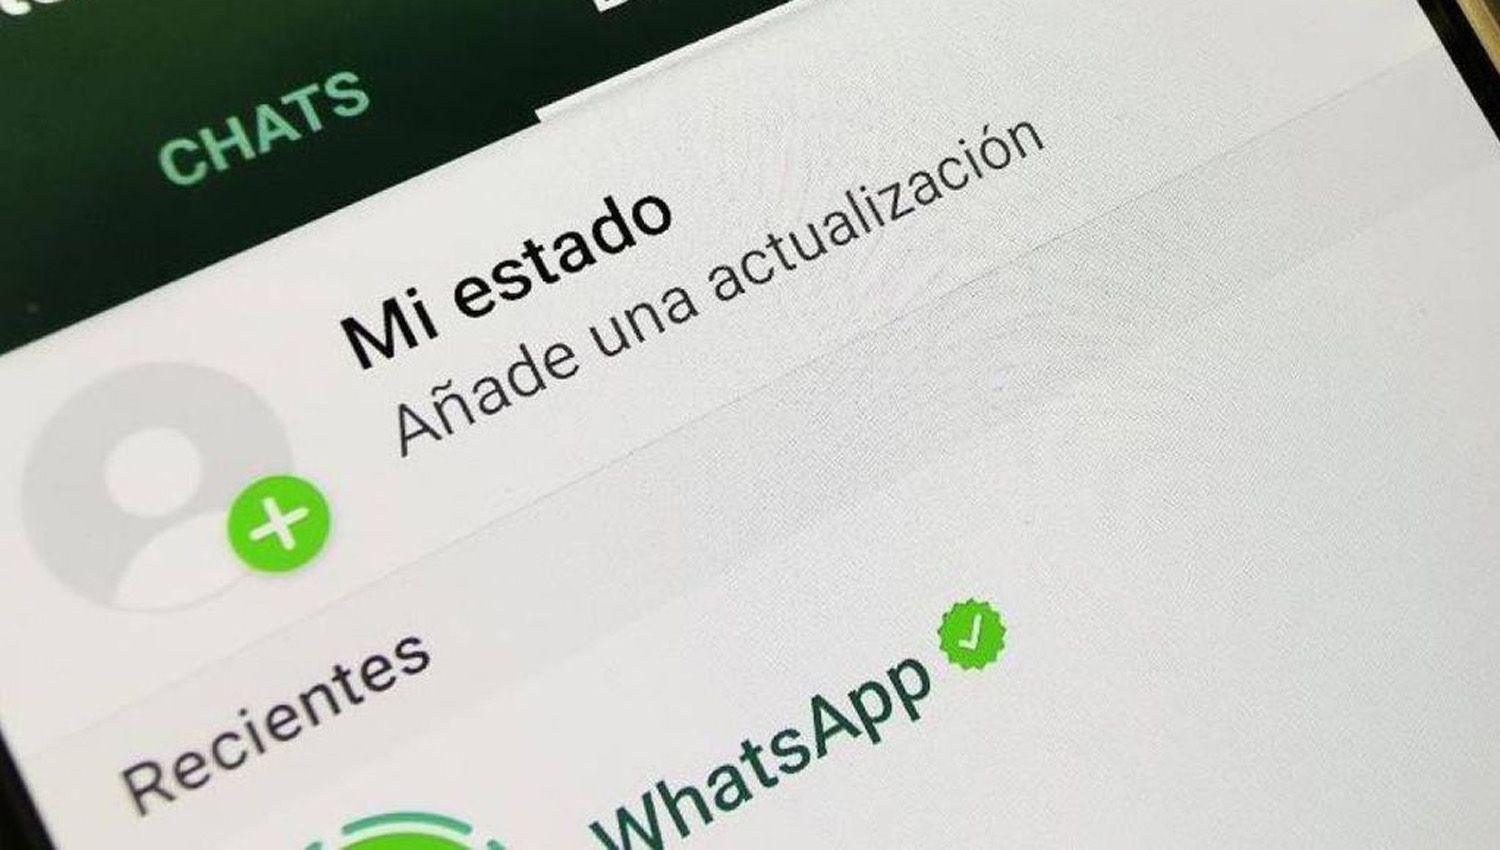 Whatsapp estaacute desarrollando una nueva funcioacuten para visualizar los estados